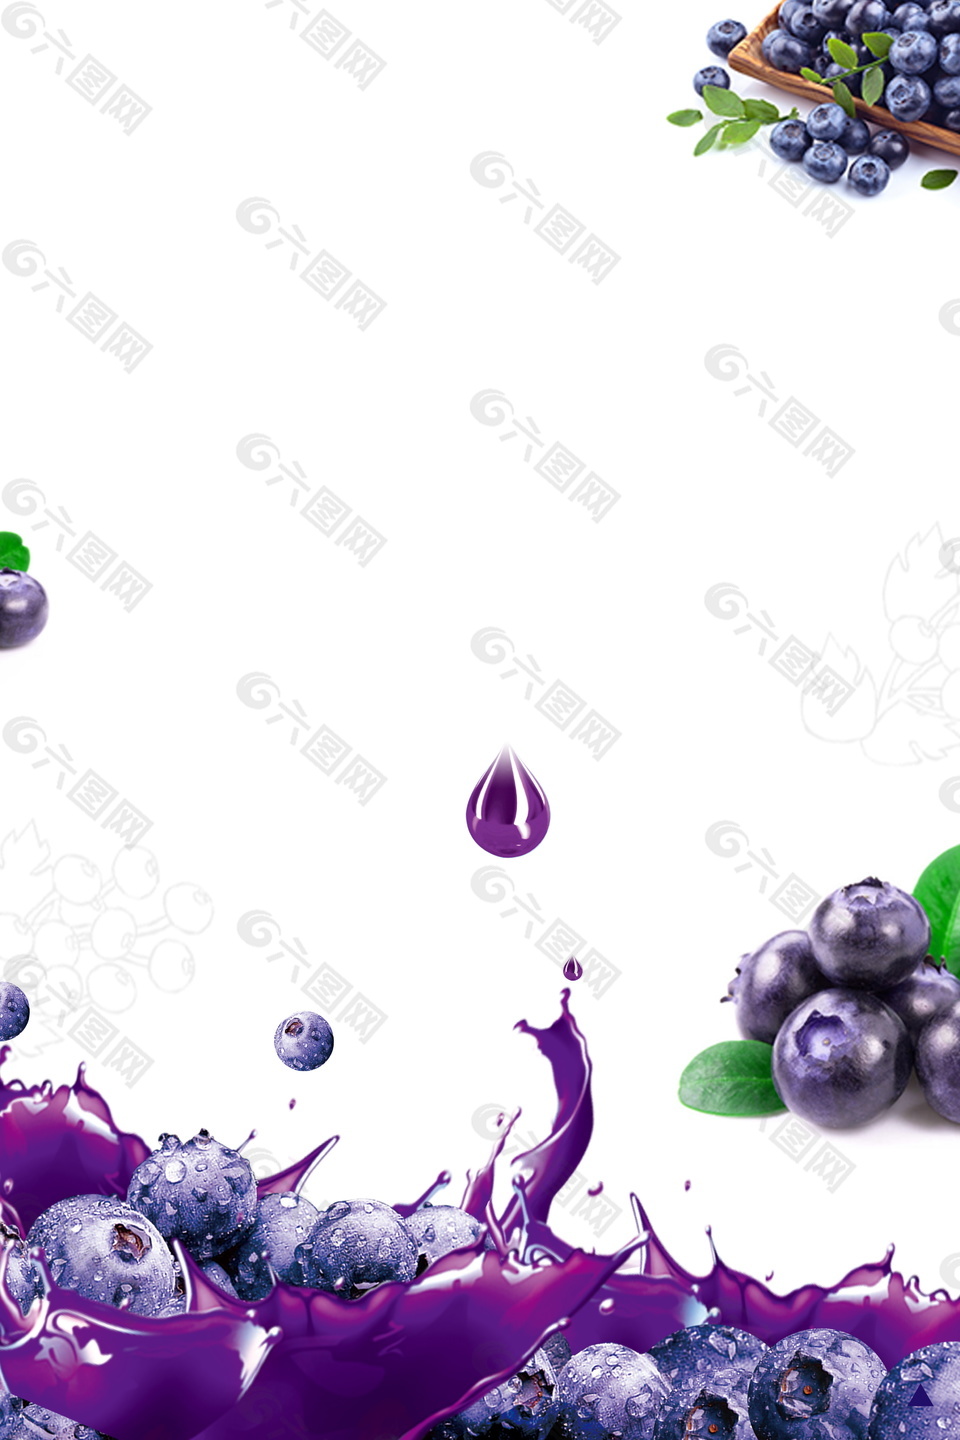 夏日蓝莓水果饮品海报背景